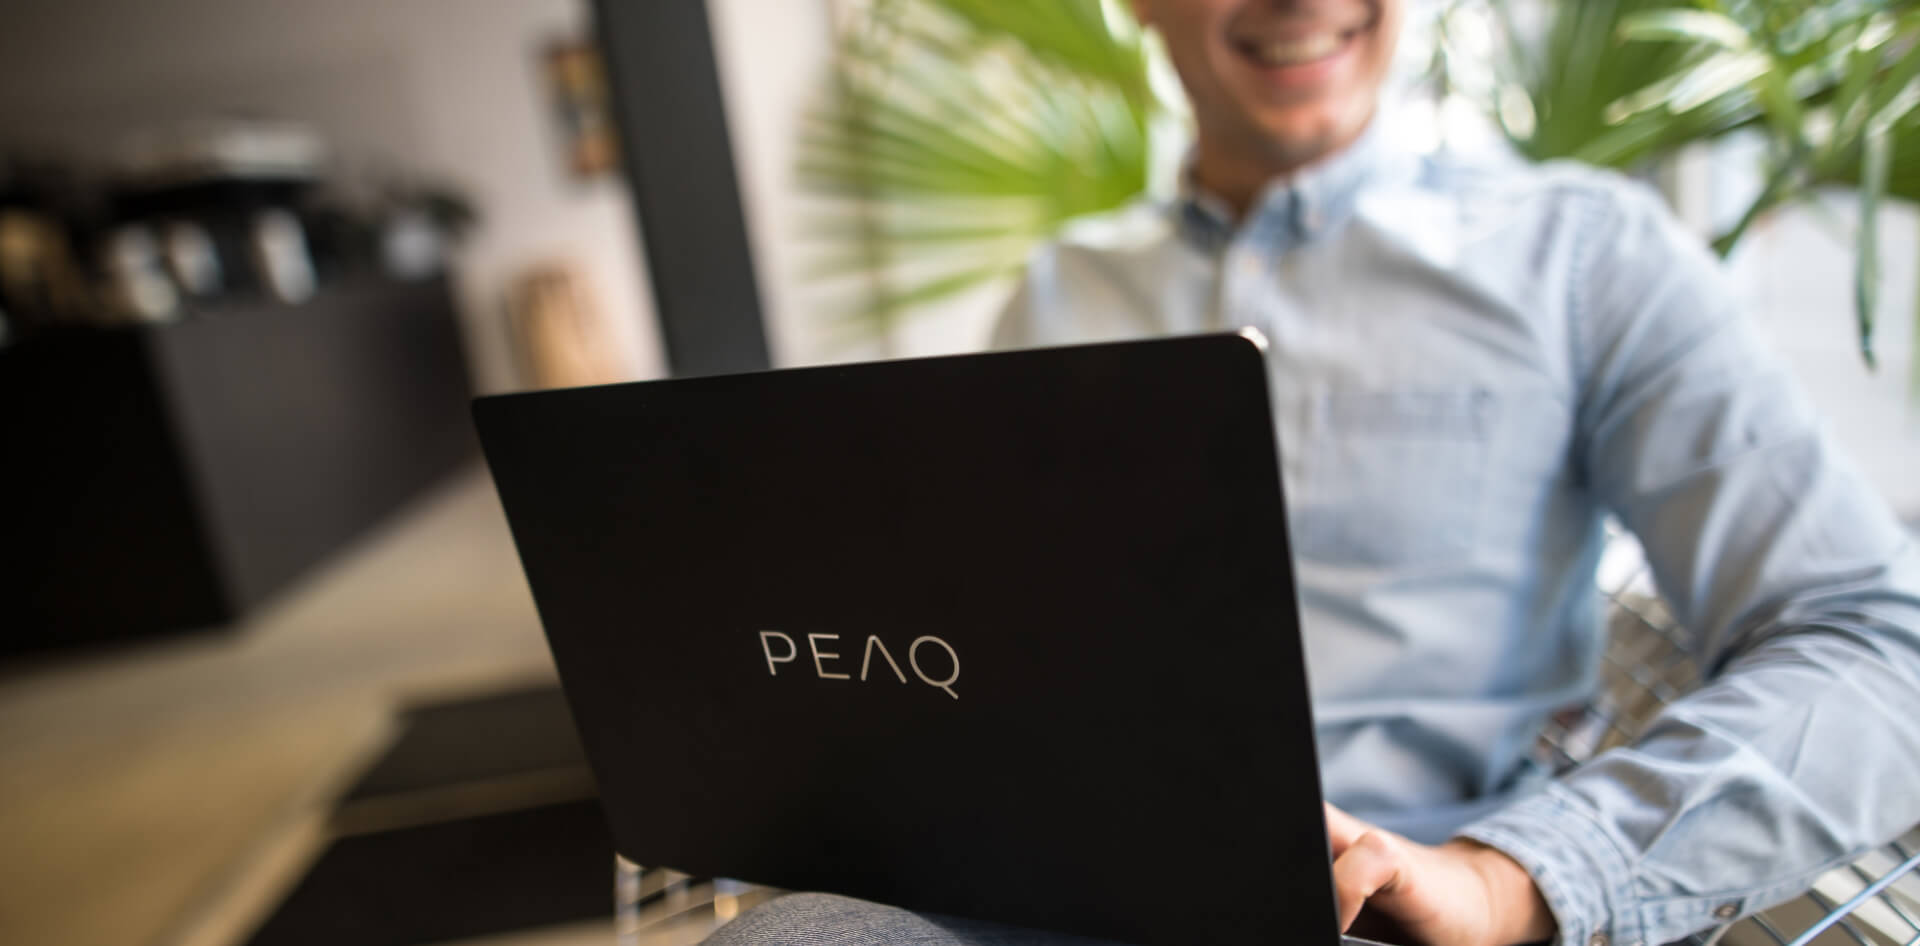 Jonge man met op zijn schoot een laptop van PEAQ, lacht, zit op kantoor of in een café, close-upbeeld